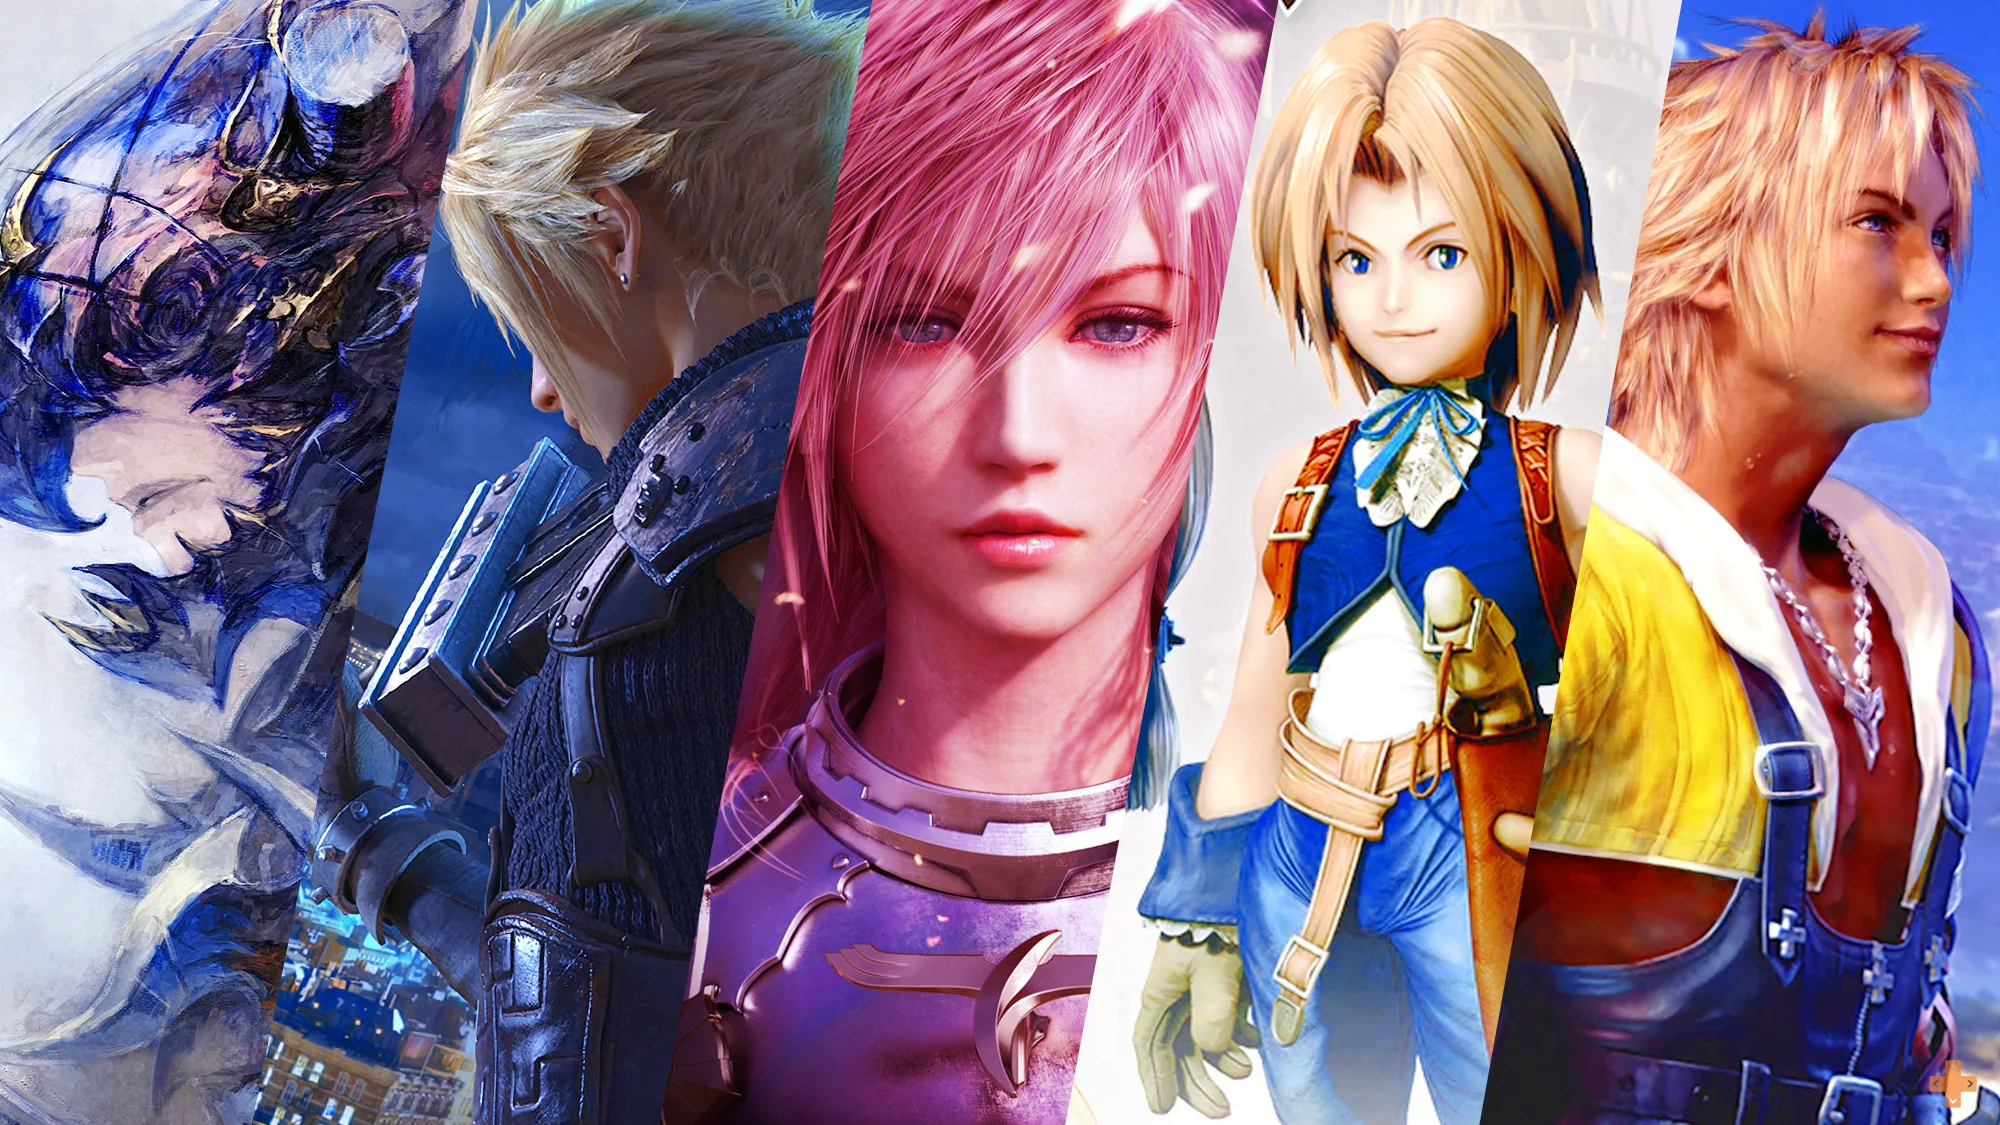 Final Fantasy : les espoirs des fans de ce jeu très apprécié brisés